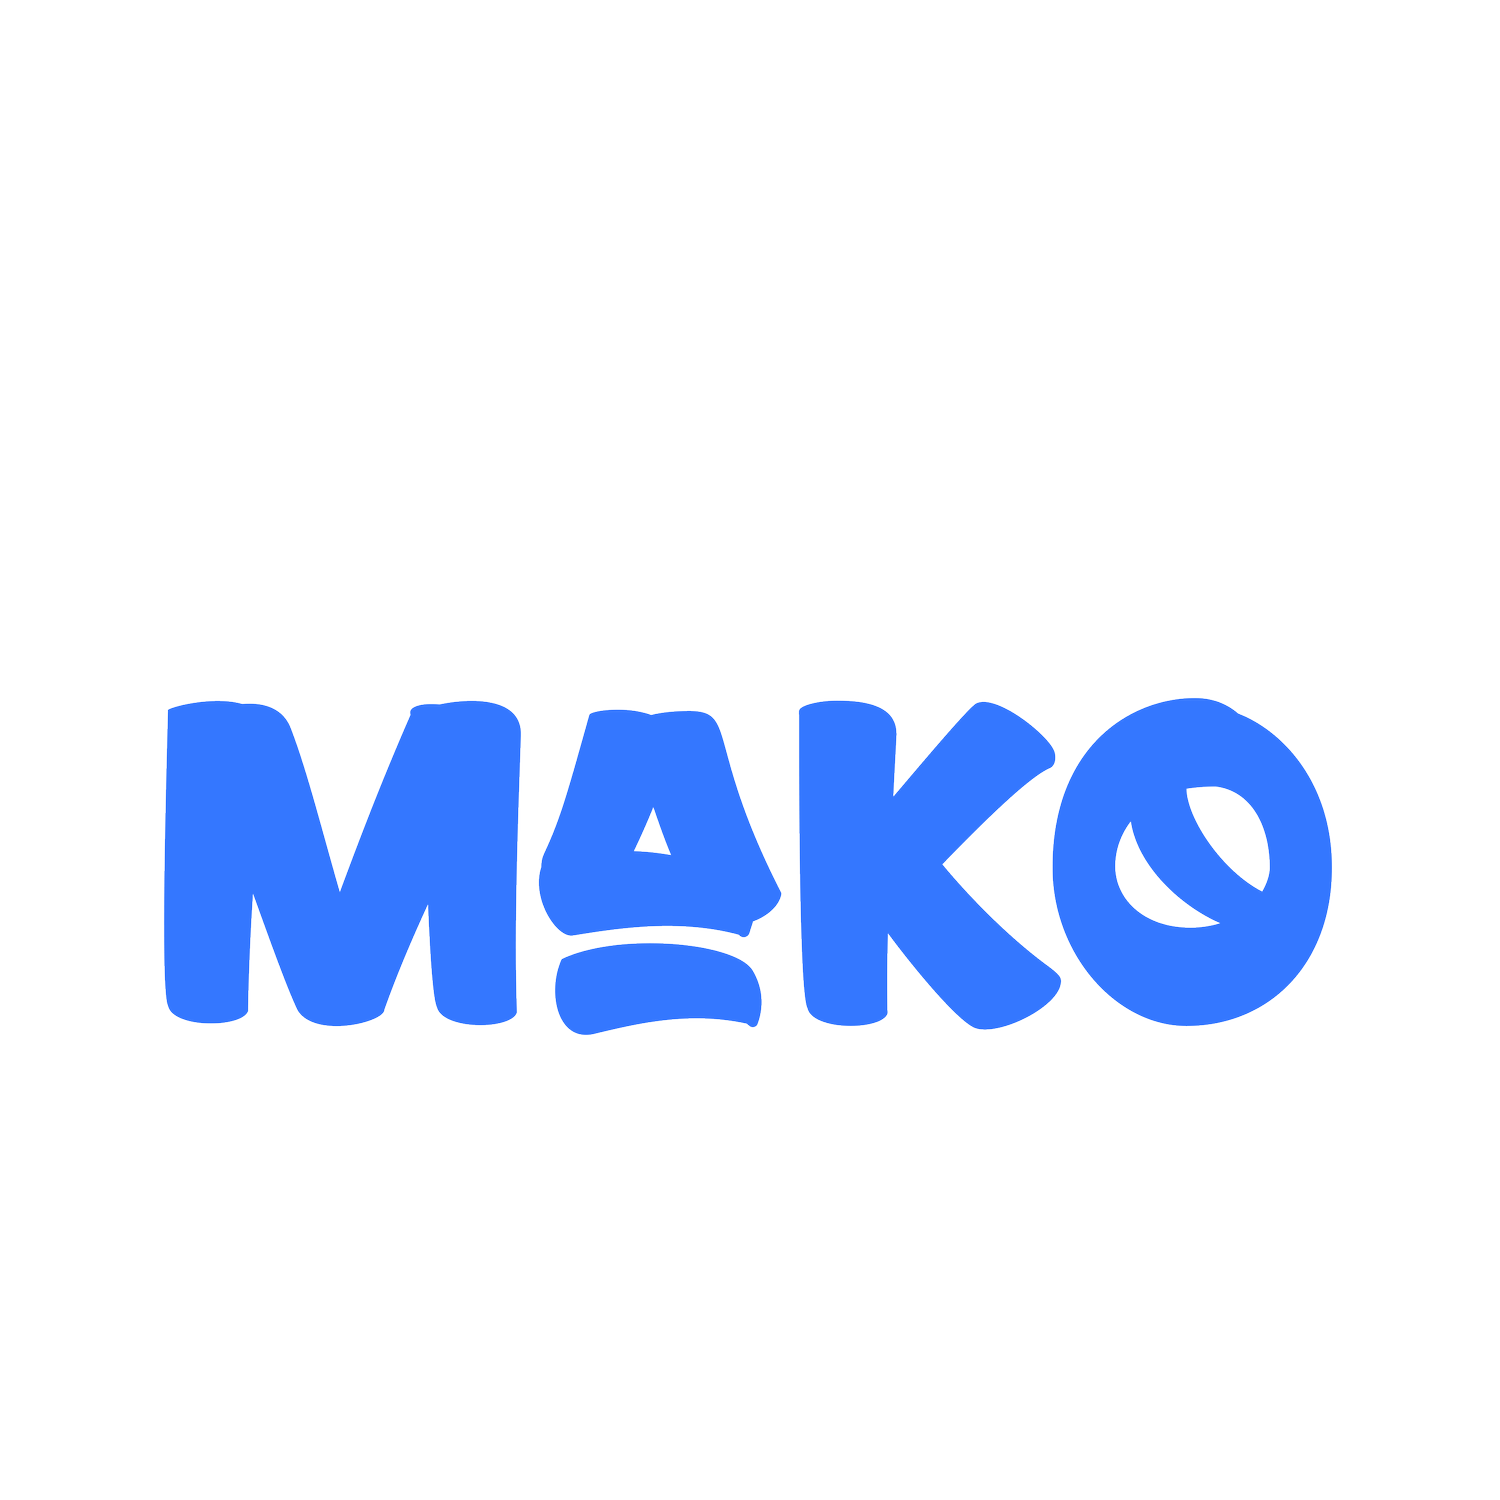 Flicks by Mako